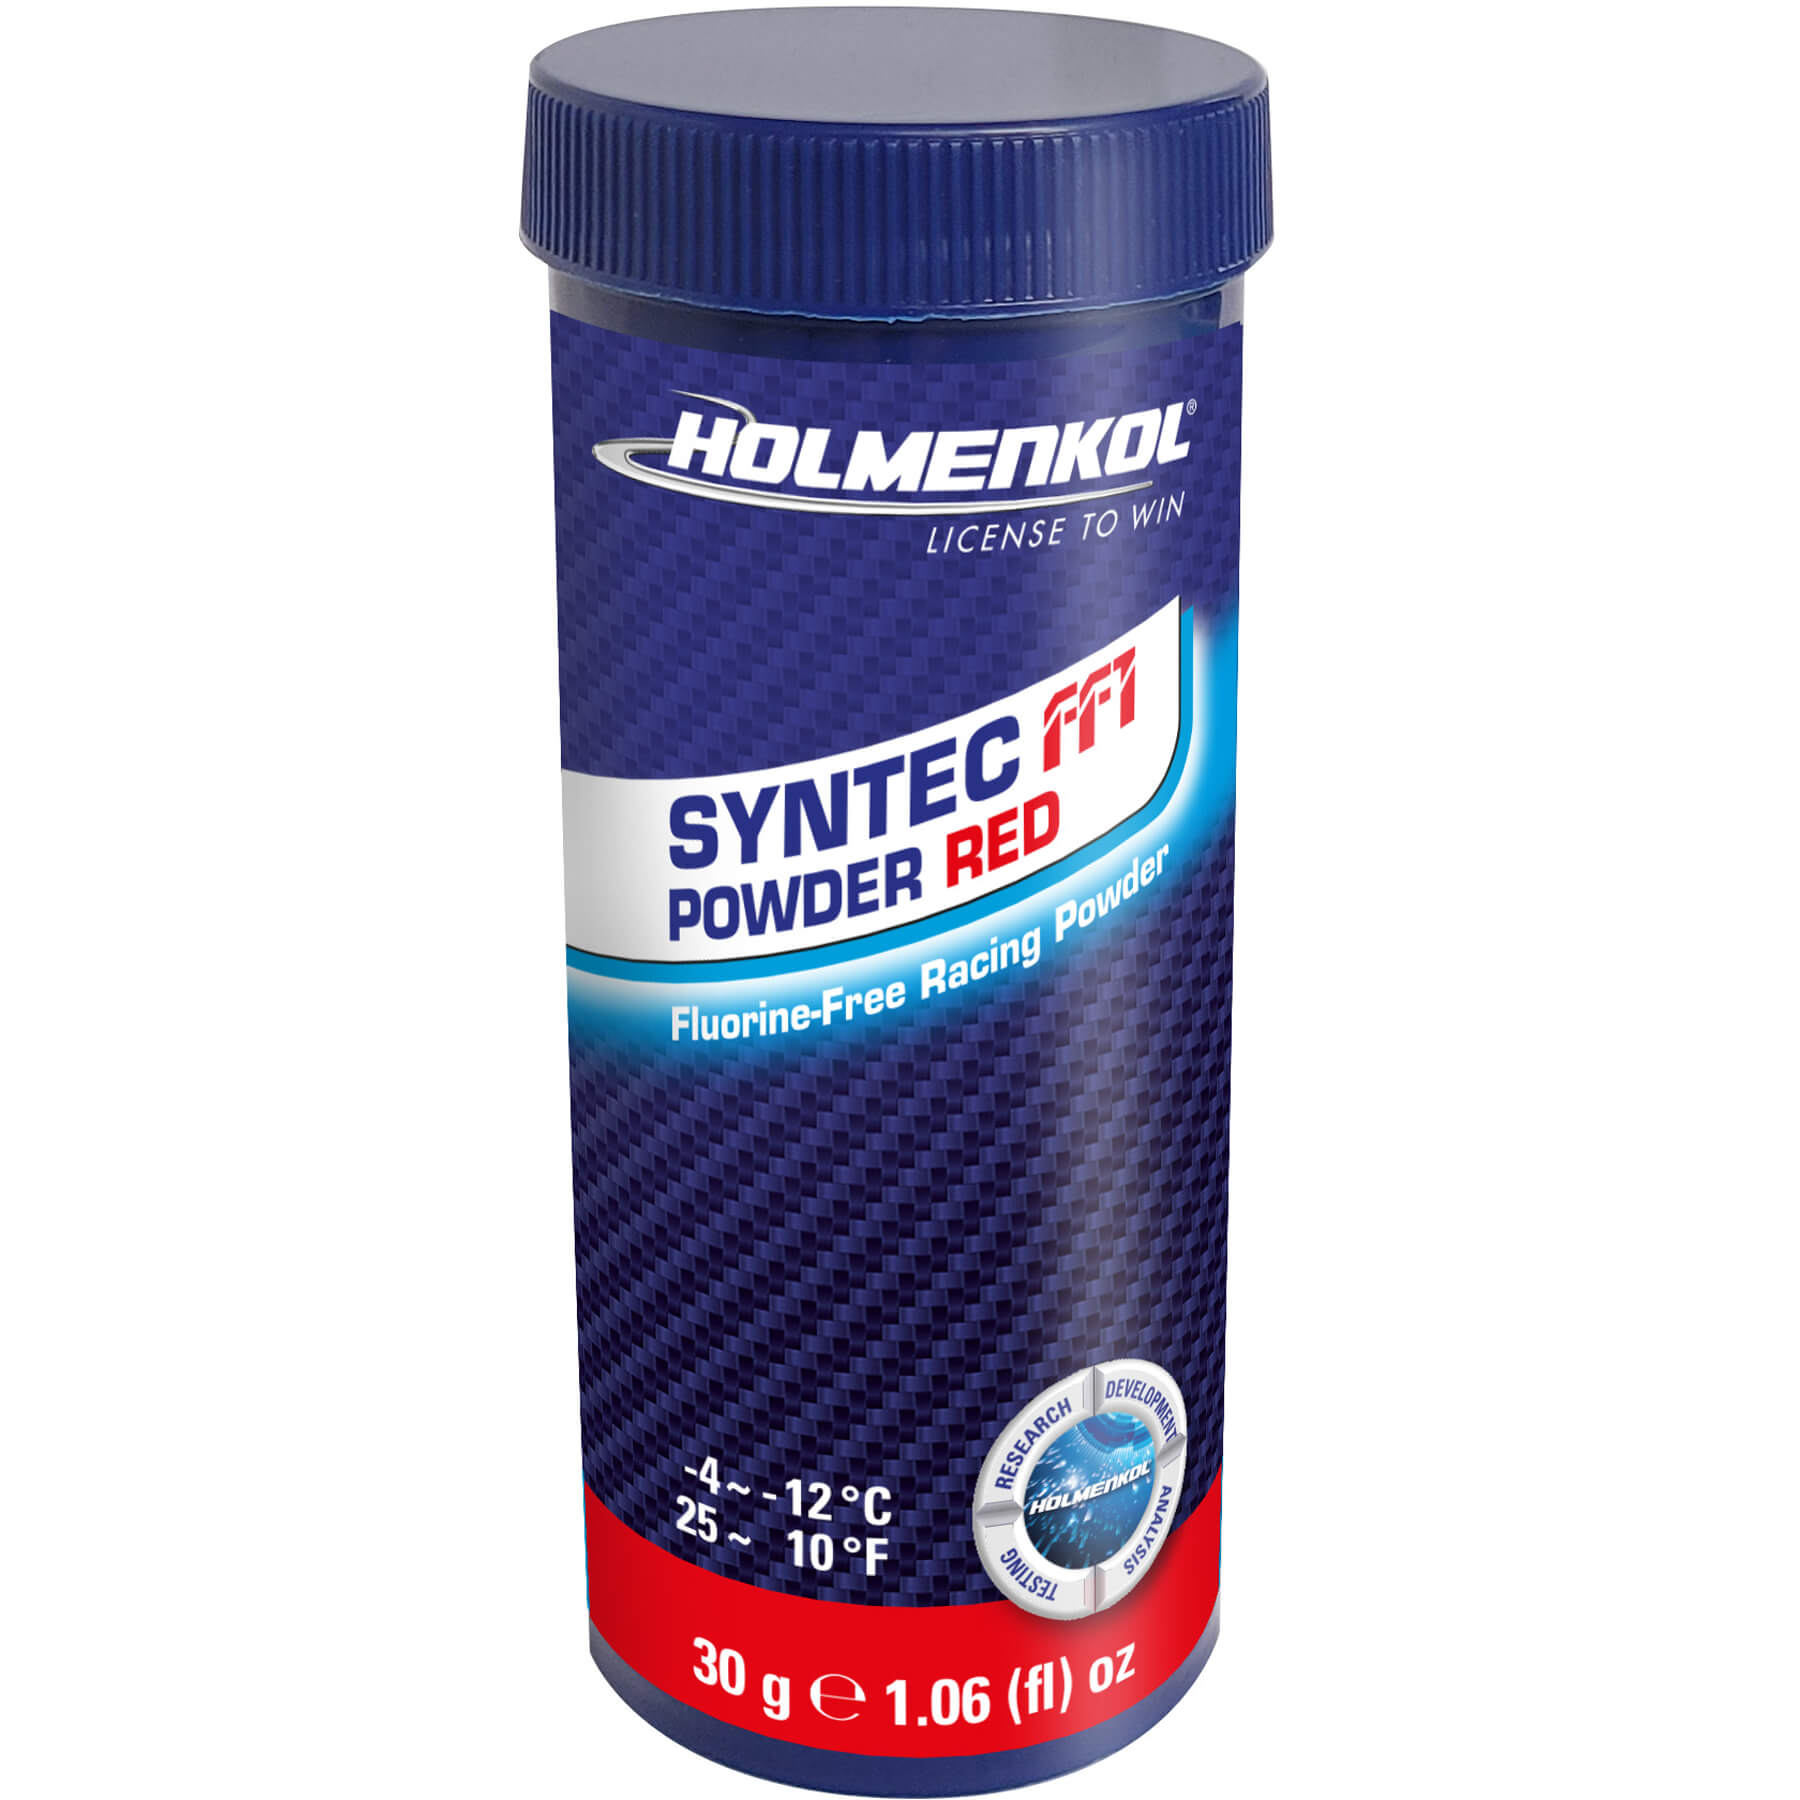 Holmenkol Syntec FF1 Powder 30g